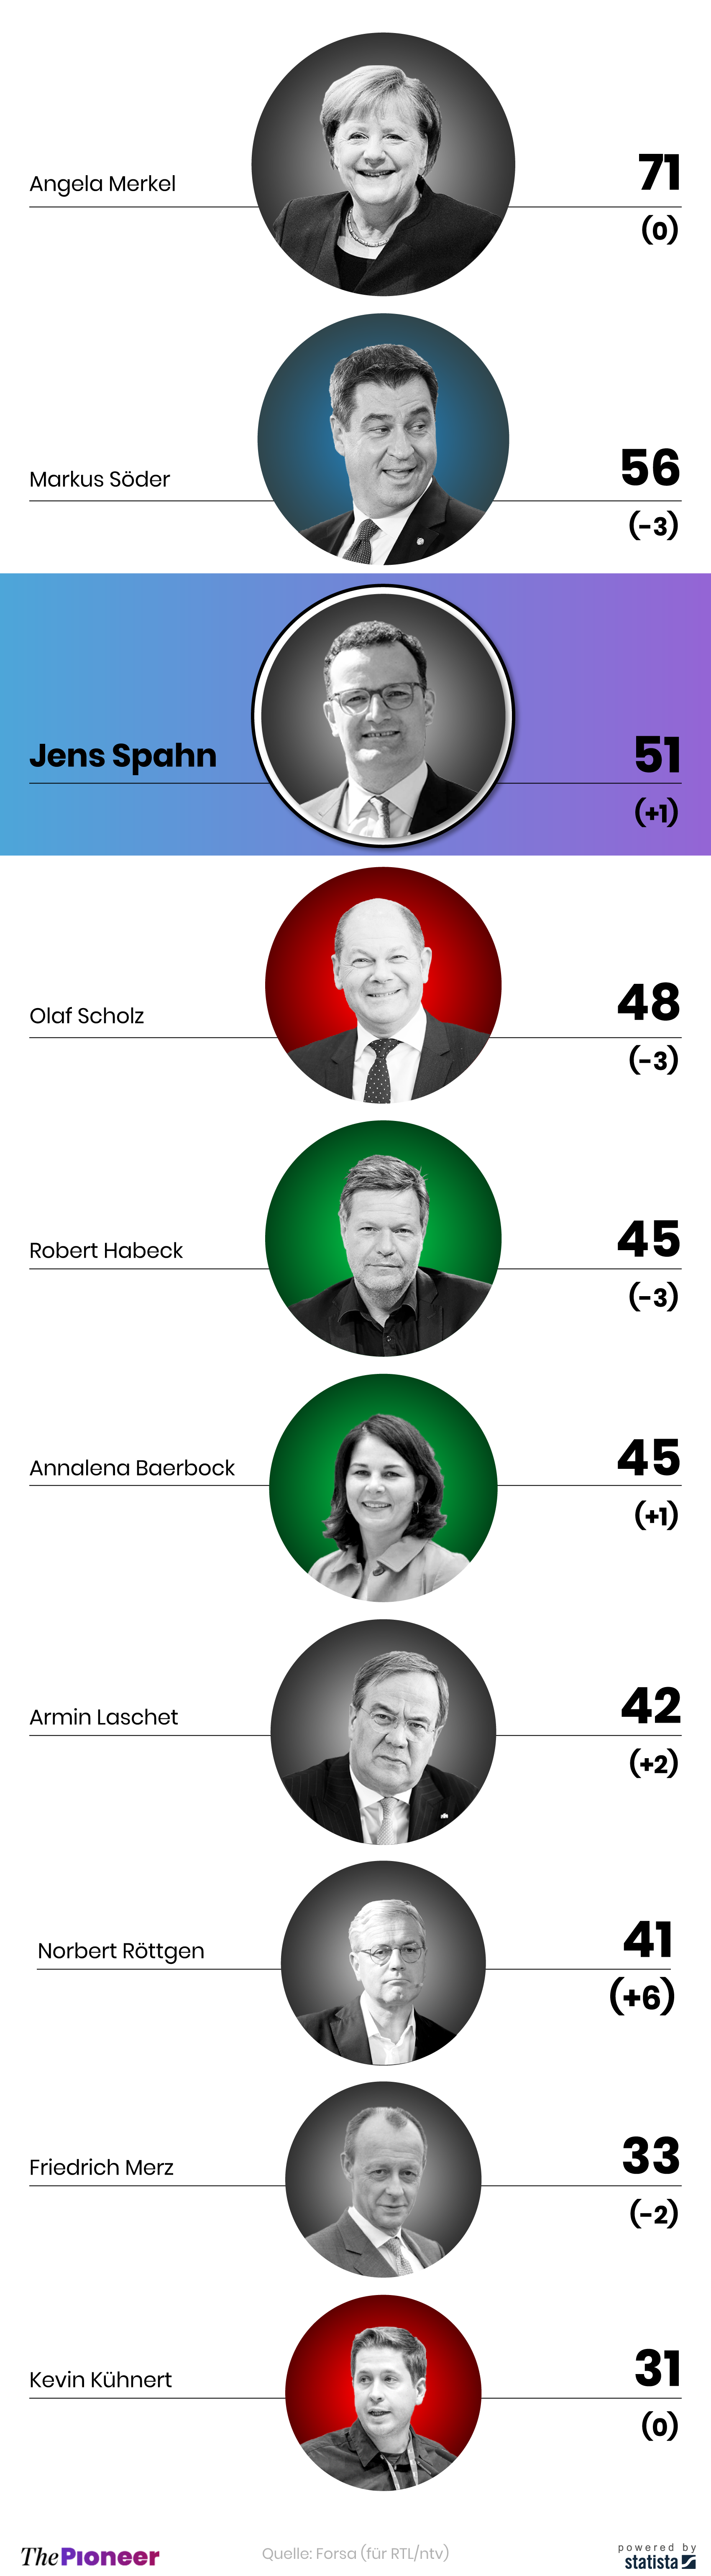 Politiker-Ranking im Dezember 2020, Platz 1 bis 10